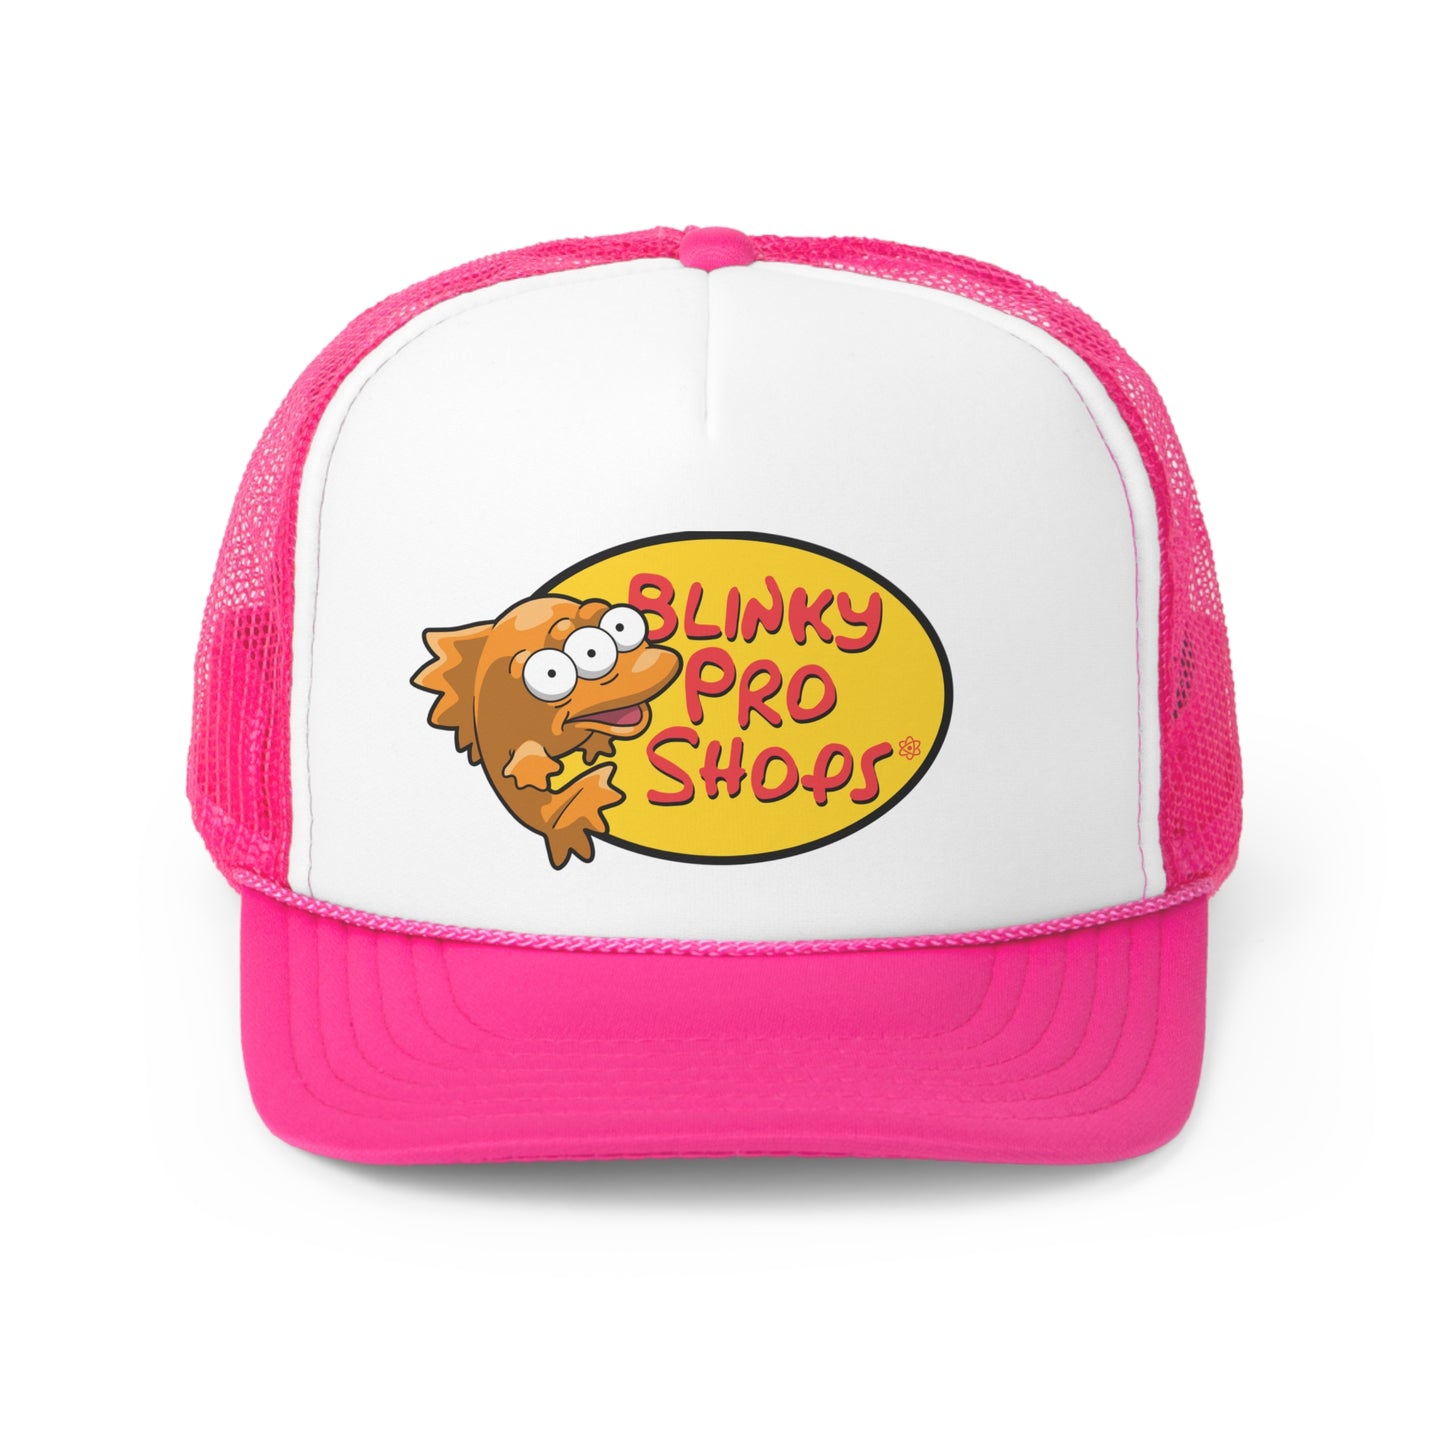 Blinky Pro Shops trucker hat